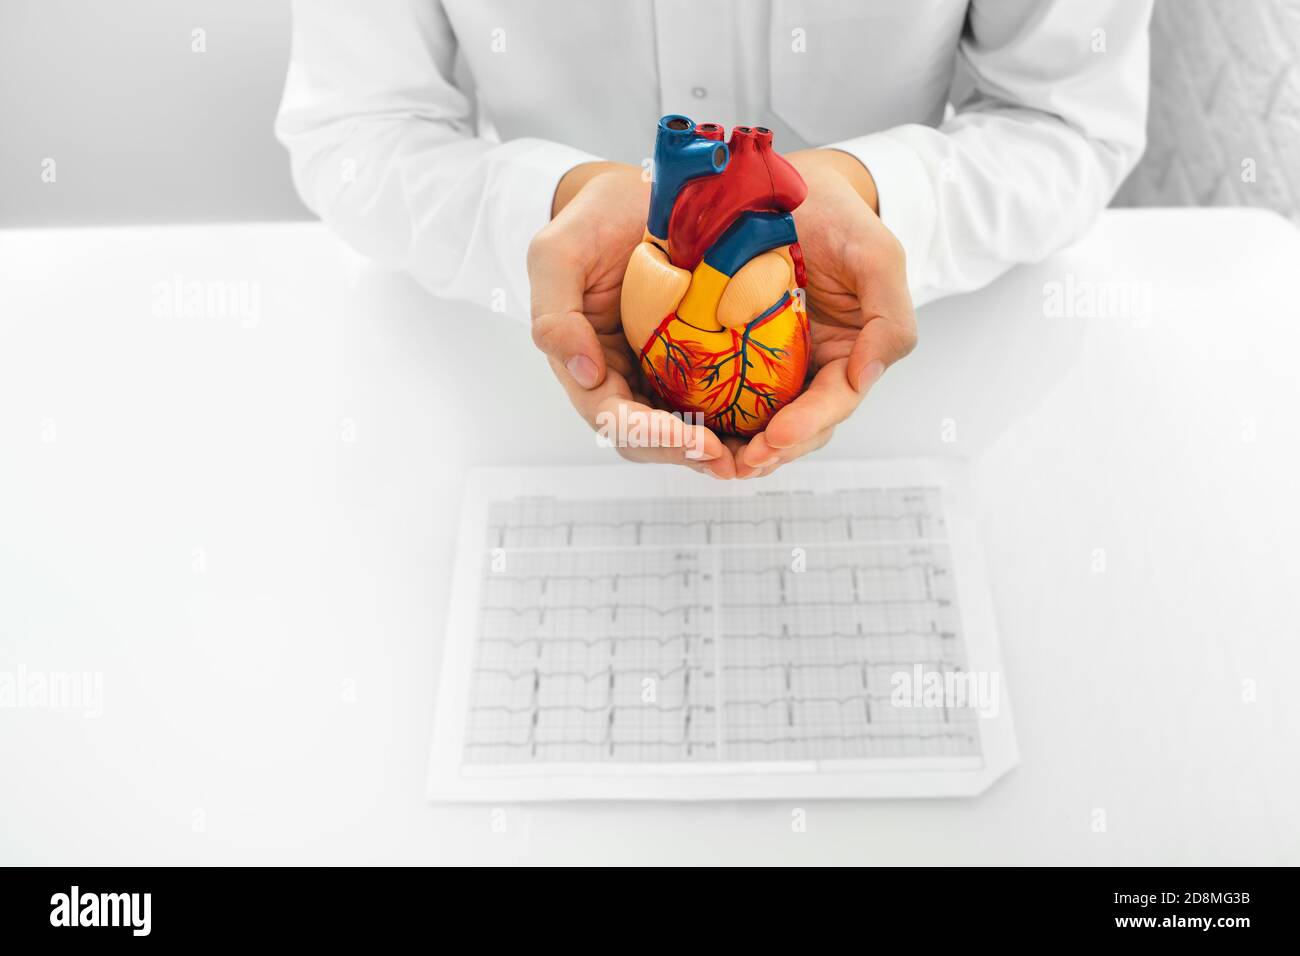 Cardiologo che tiene in mano il modello di cuore e i risultati di un paziente con elettrocardiogramma. supporto medico per la salute cardiaca umana Foto Stock